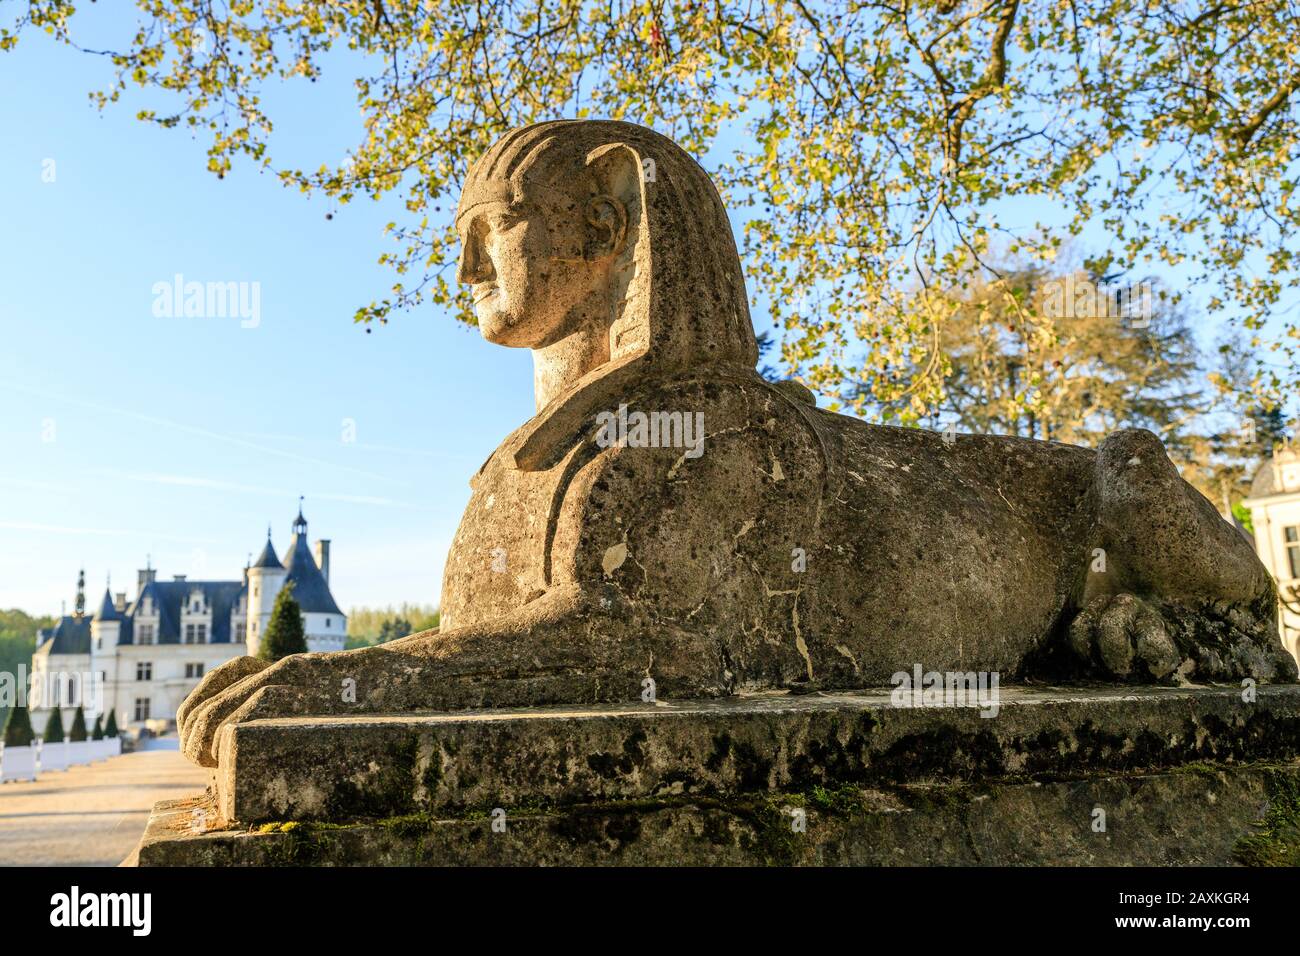 Frankreich, Indre et Loire-Tal, das von der UNESCO zum Weltkulturerbe erklärt wurde, Chenonceaux, Chateau de Chenonceau Park und Gärten, Sphinx-Skulpturen an der Stockfoto